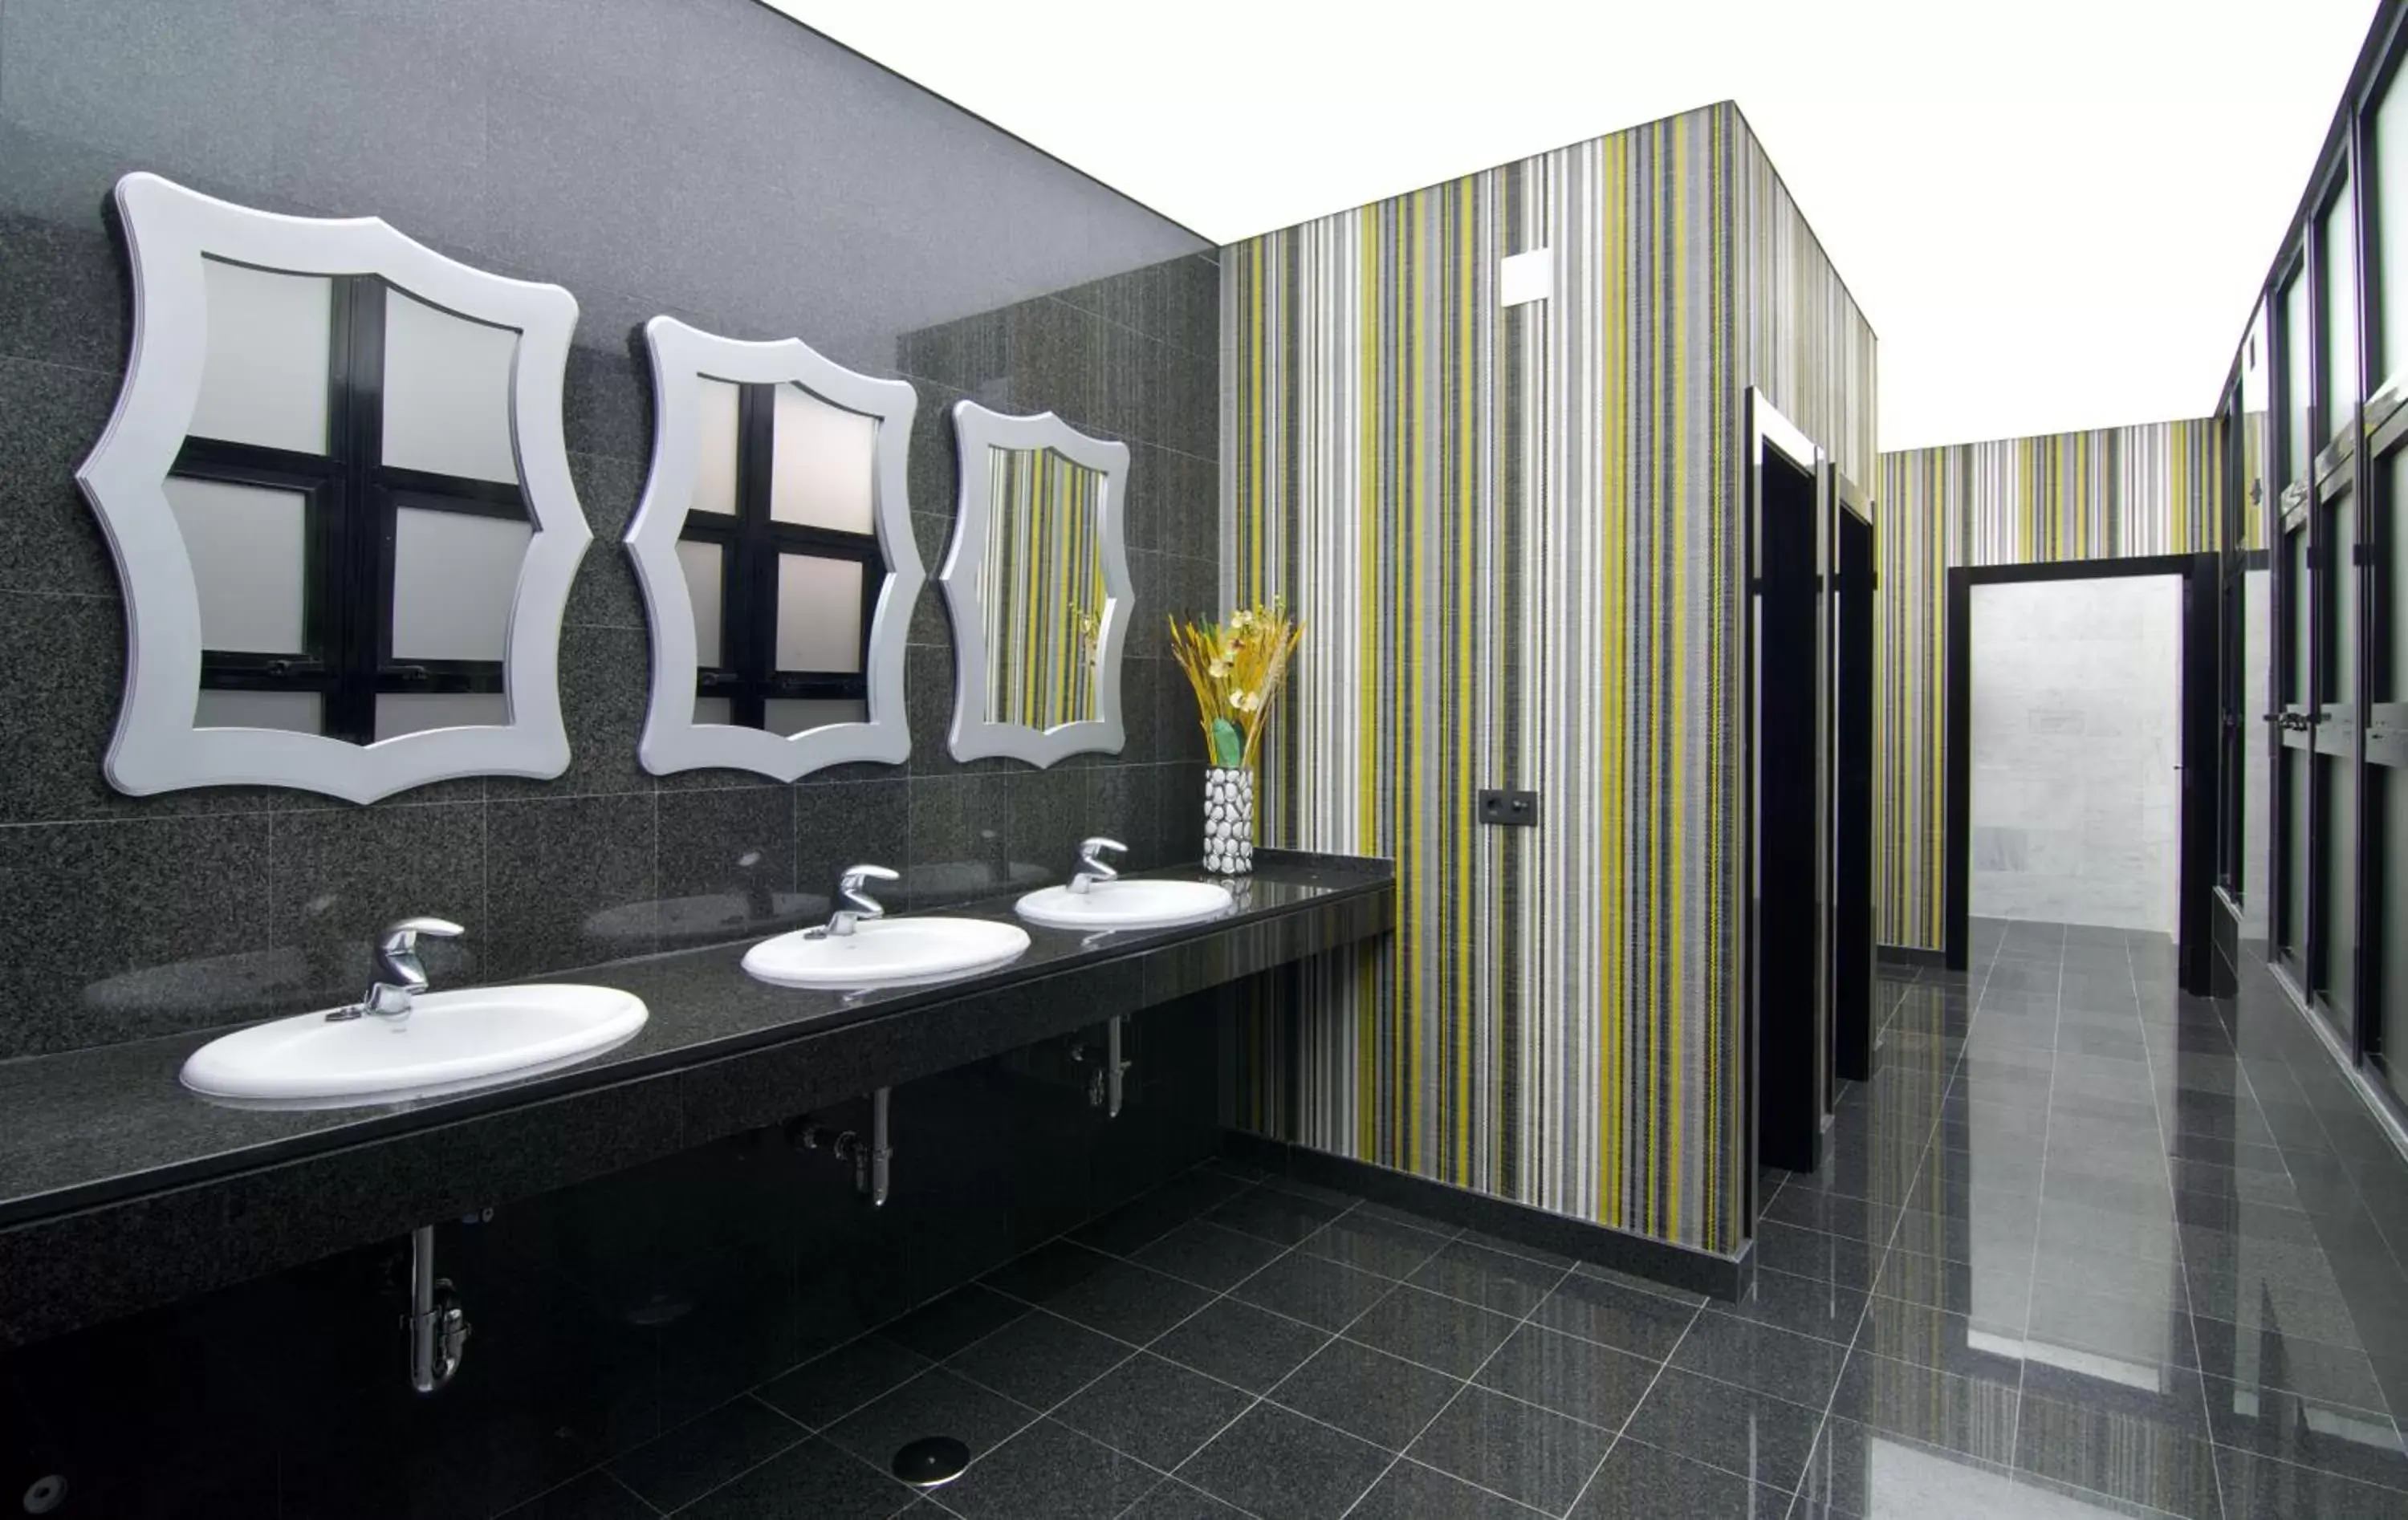 Lobby or reception, Bathroom in Hotel Puente Real